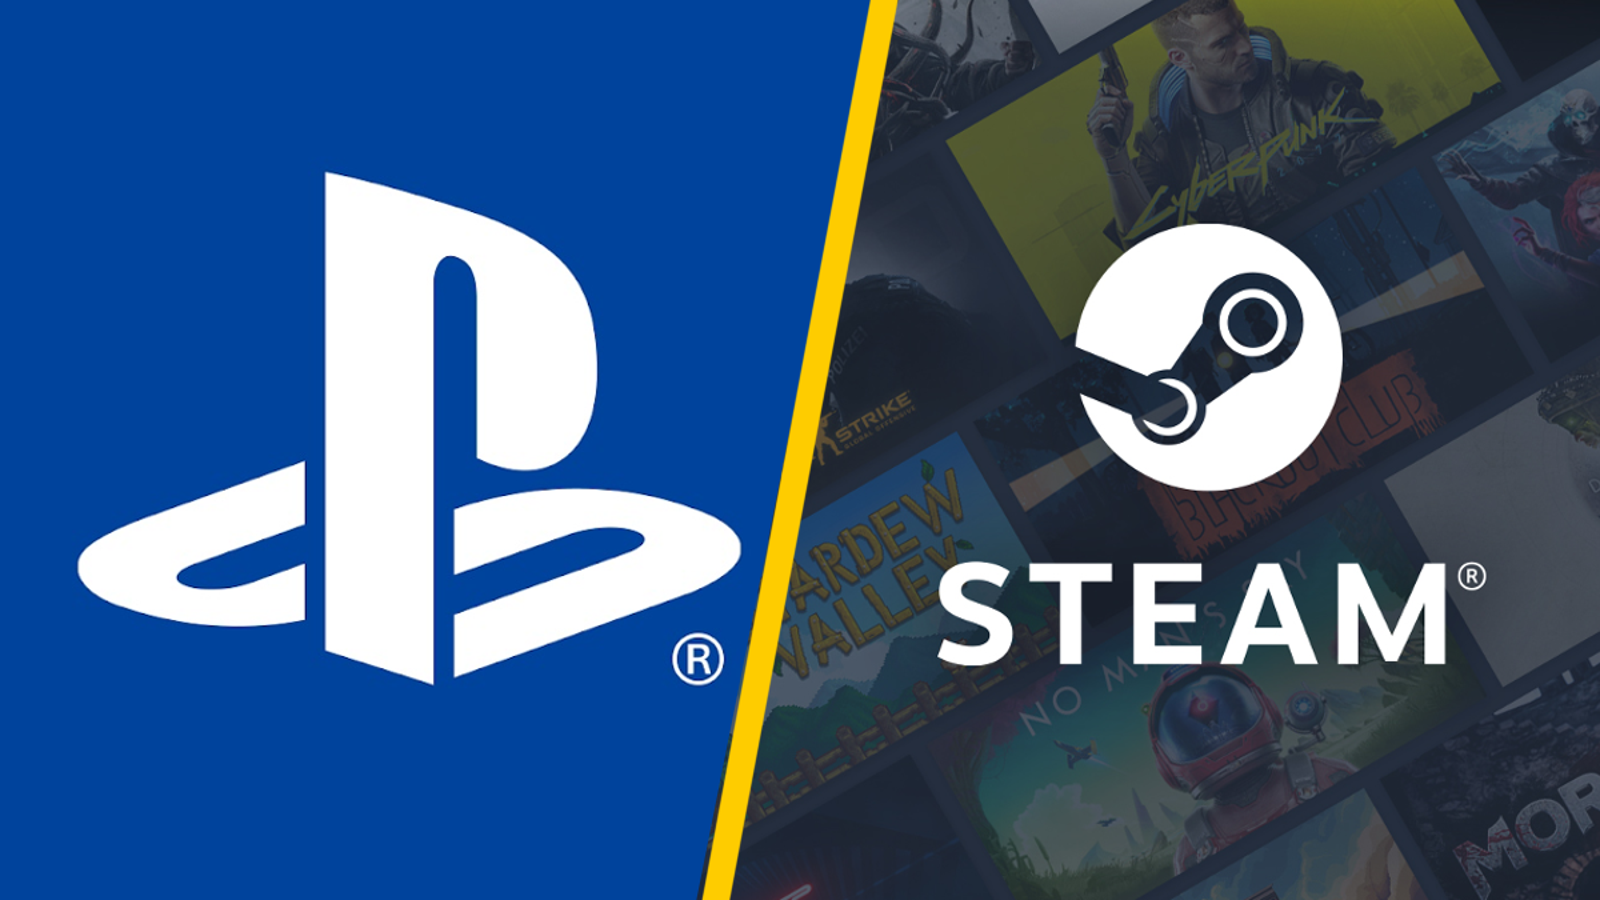 Página do PlayStation Studios na Steam sugere mais ports para PC